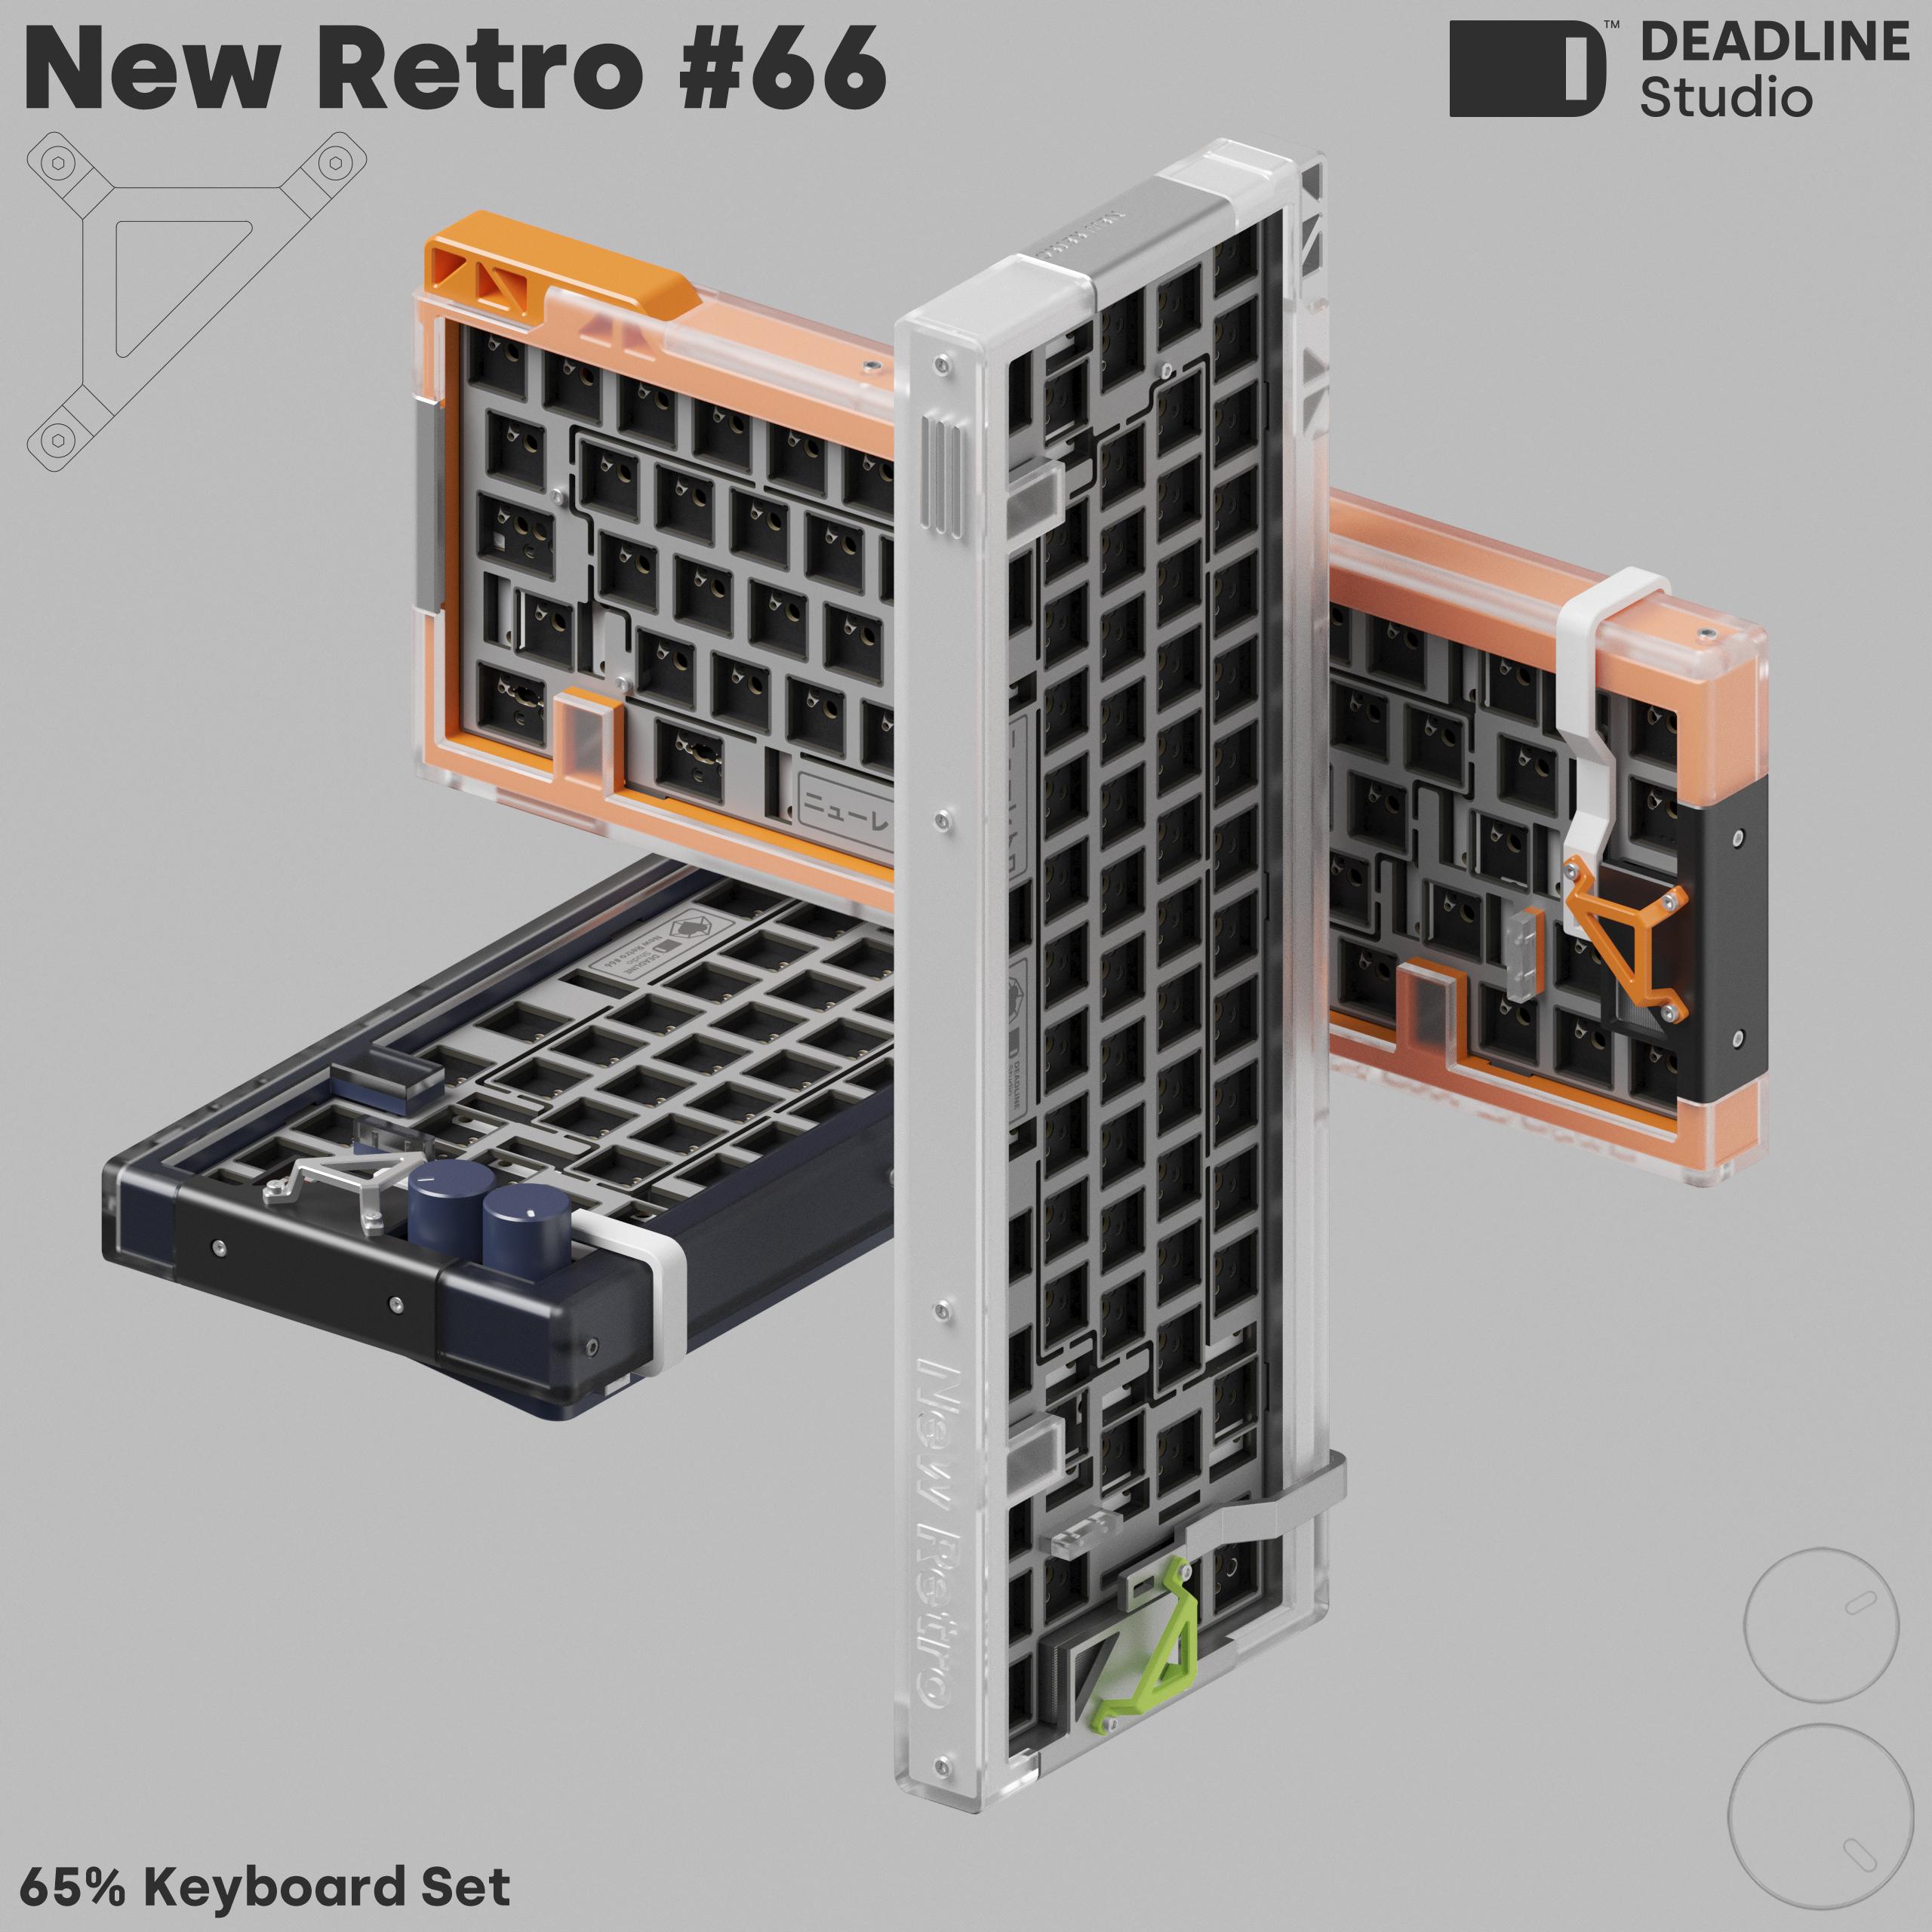 New Retro 66 by Deadline Studio